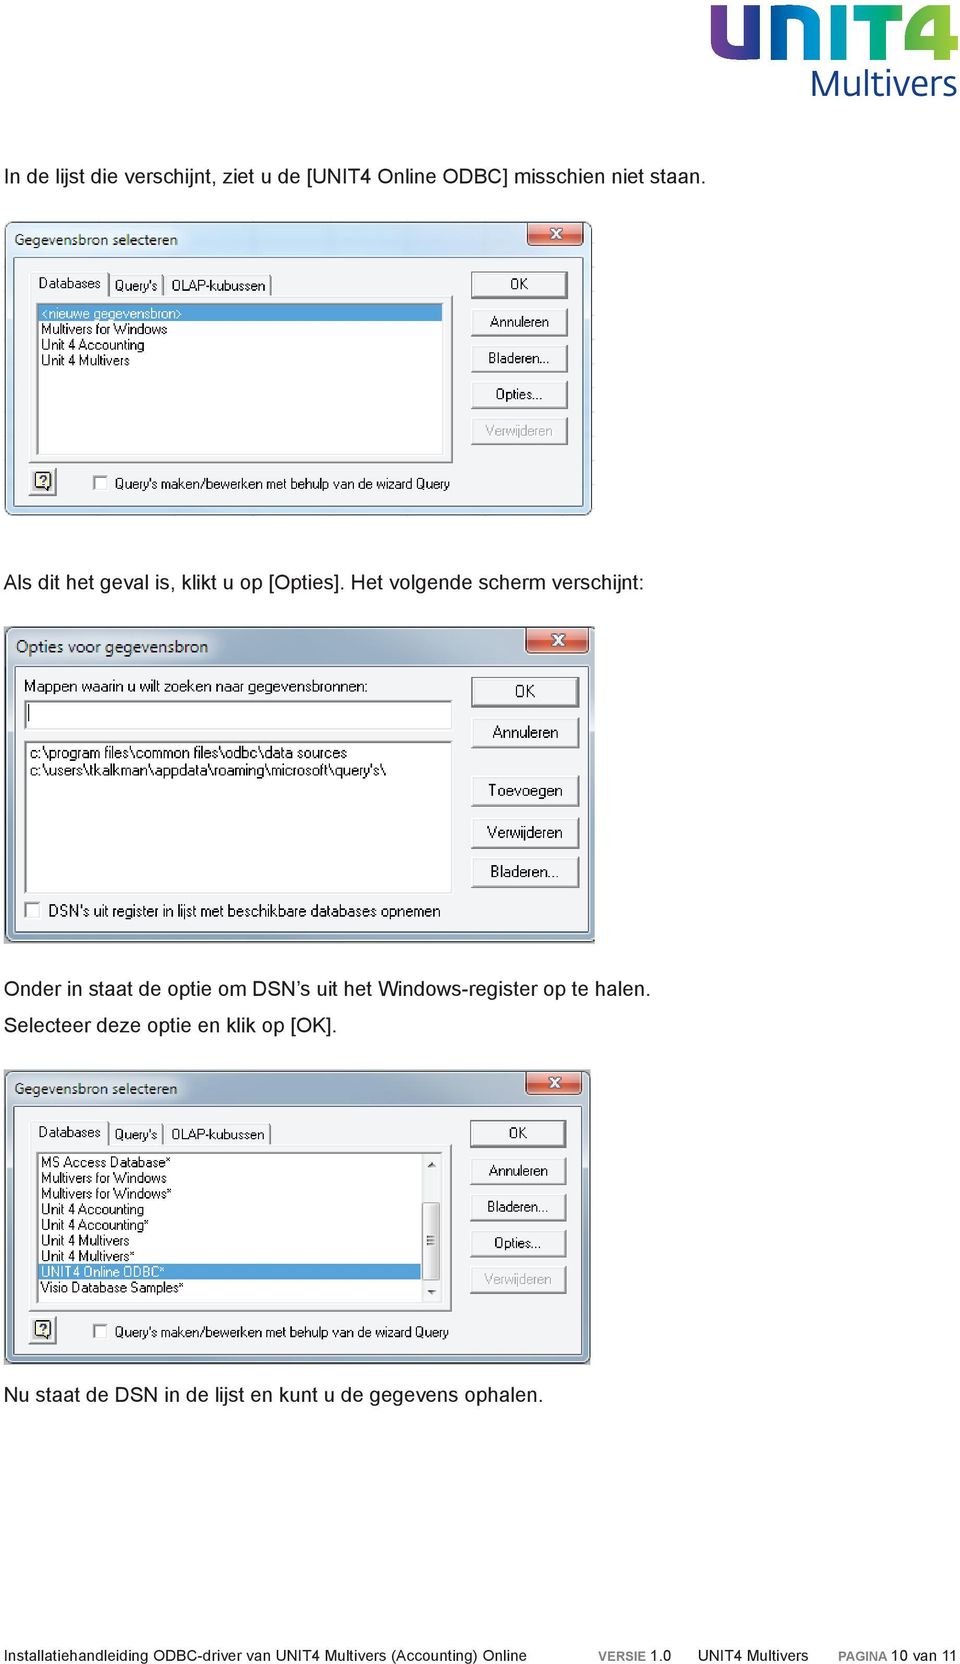 Het volgende scherm verschijnt: Onder in staat de optie om DSN s uit het Windows-register op te halen.